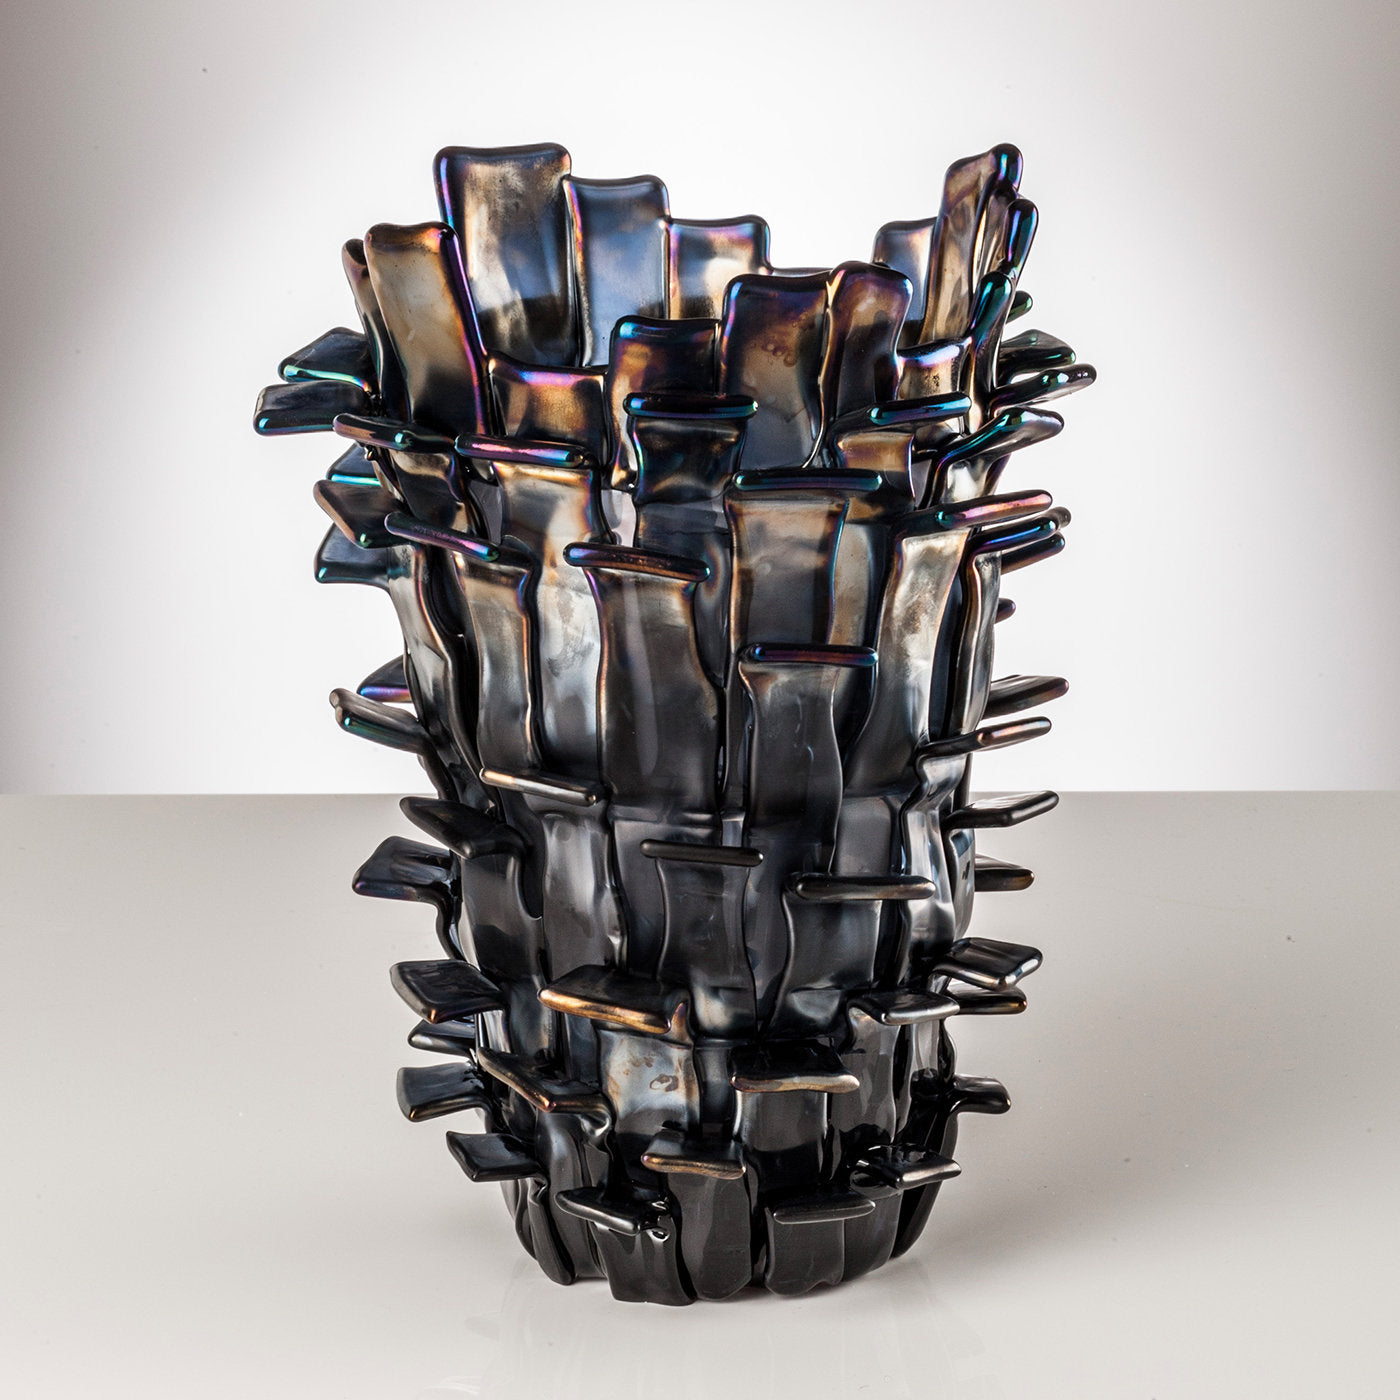 Ritagli Gray Vase by Fulvio Bianconi - Alternative view 1